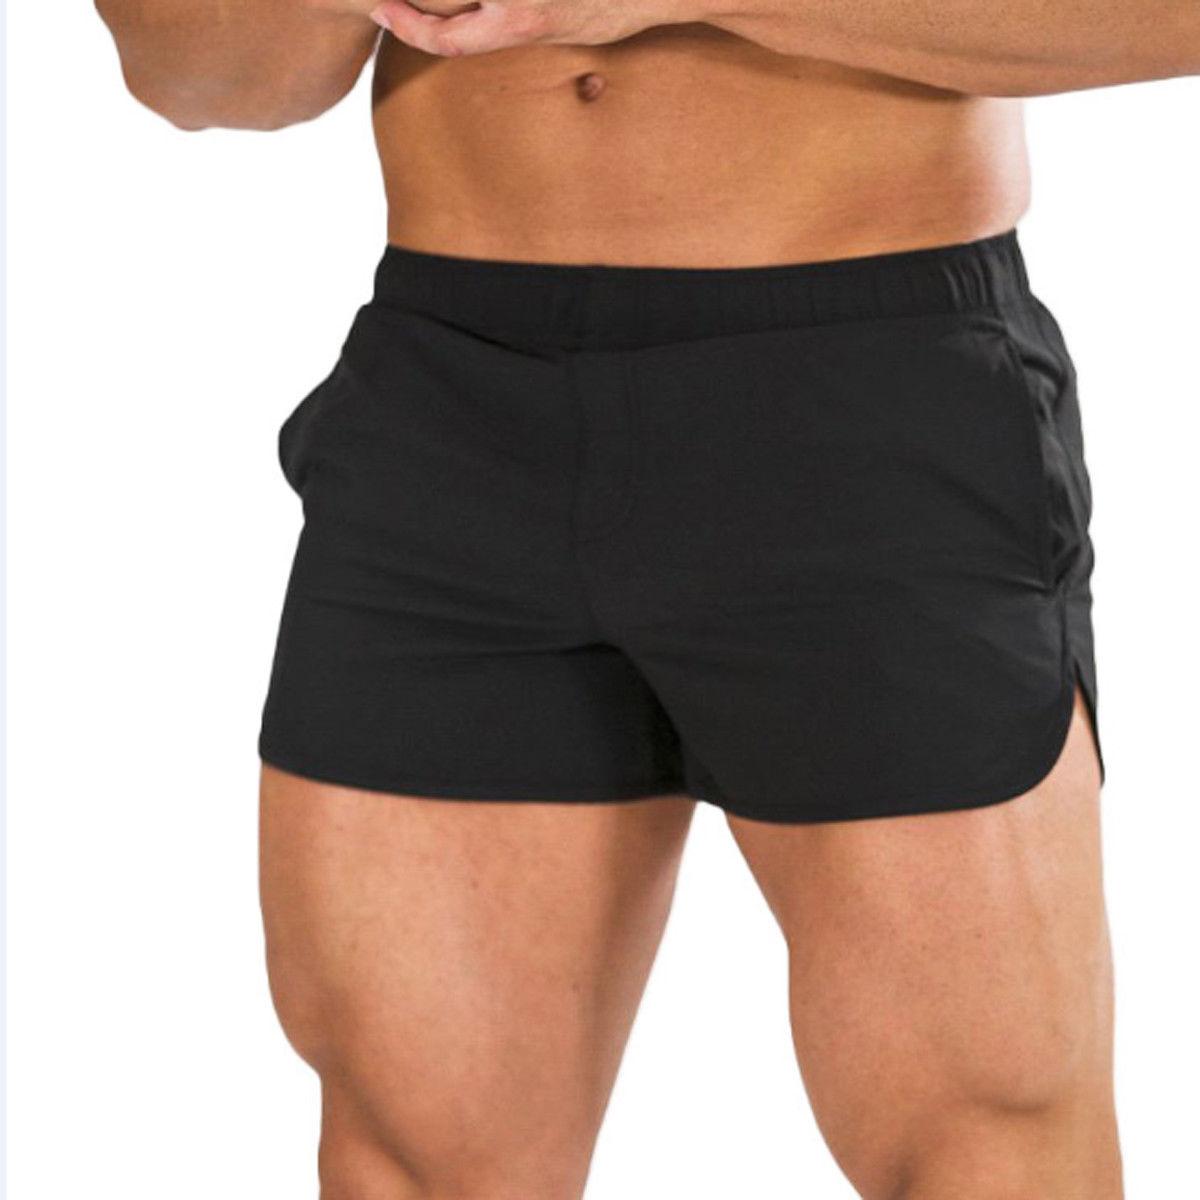 Изображение товара: Шорты мужские спортивные хлопковые, дышащие спортивные штаны для бодибилдинга, бега, фитнеса, облегающие, летние